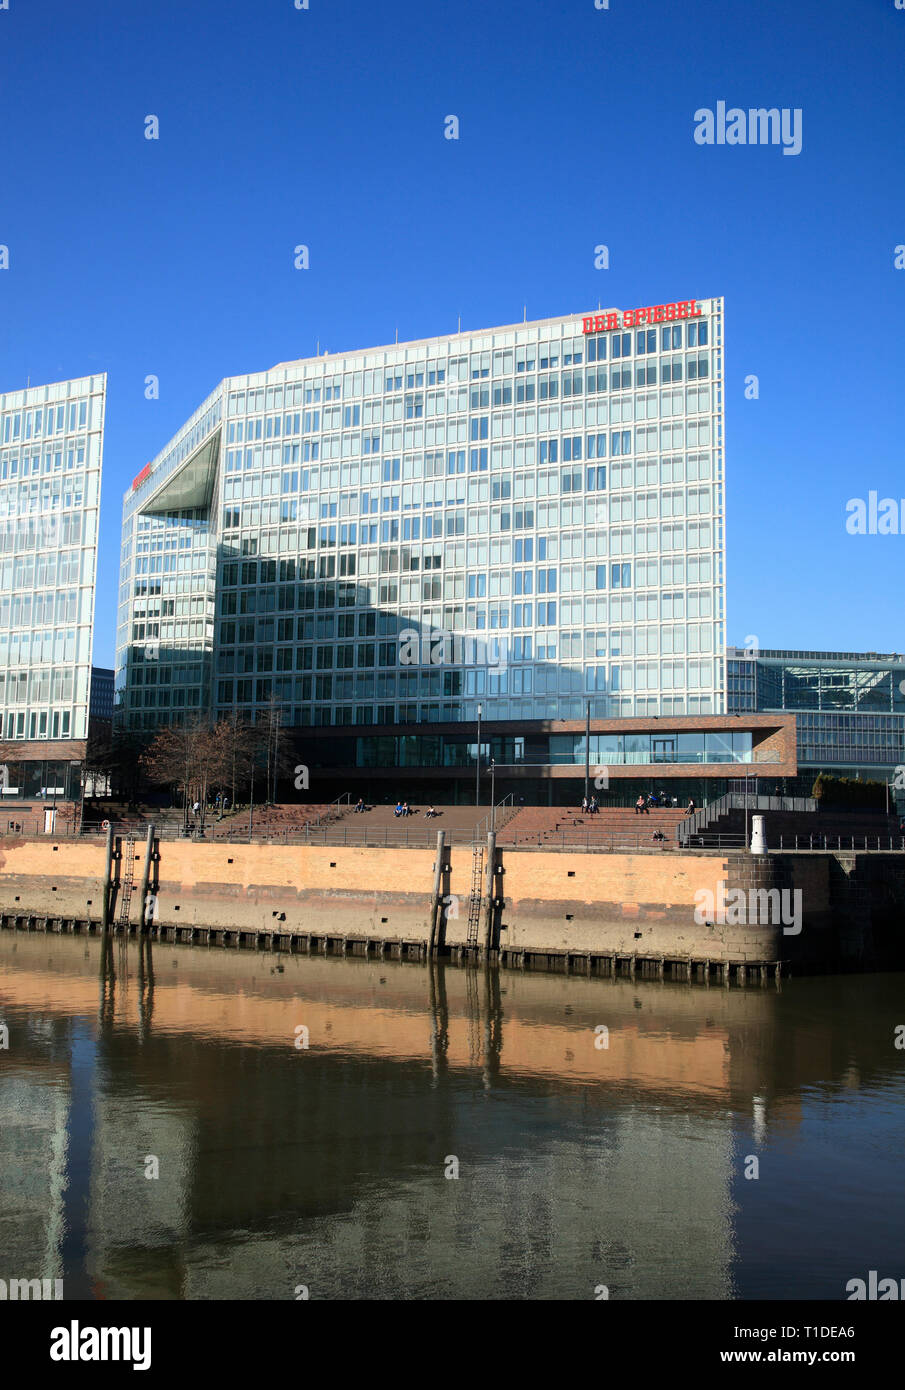 La maison d'édition Spiegel, HafenCity, Ericusspitze, Hambourg, Allemagne, Europe Banque D'Images